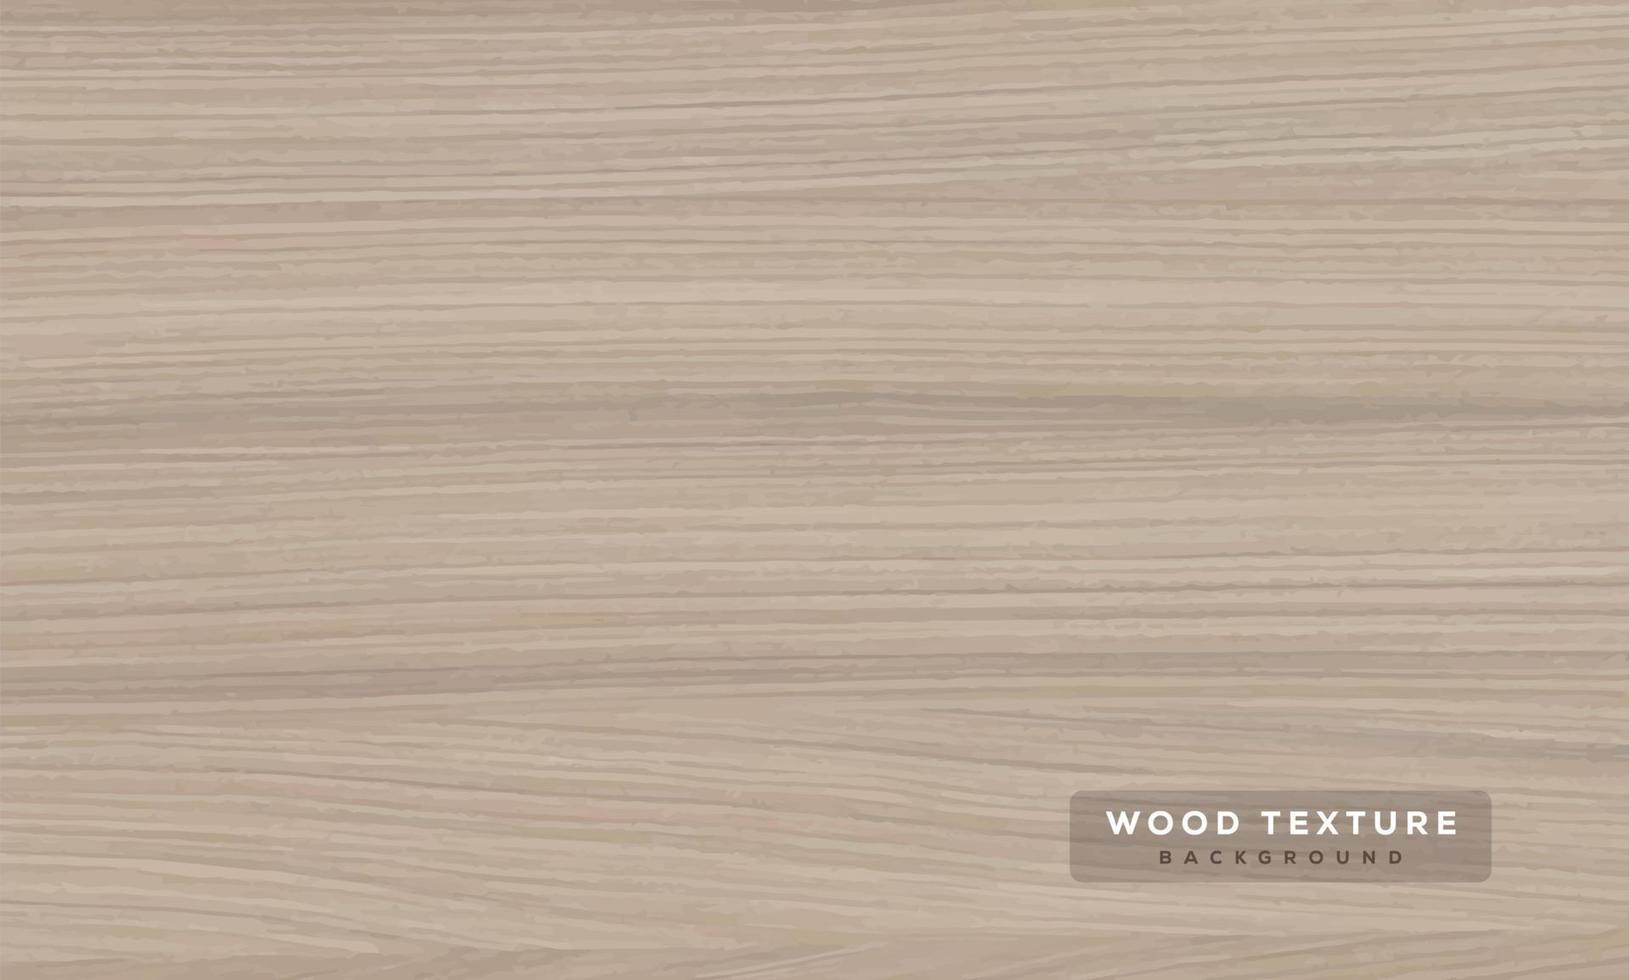 Vektorholzbeschaffenheit.realistische Holzbeschaffenheit, 3d. element für ihr design, werbung.vektorillustration. vektor